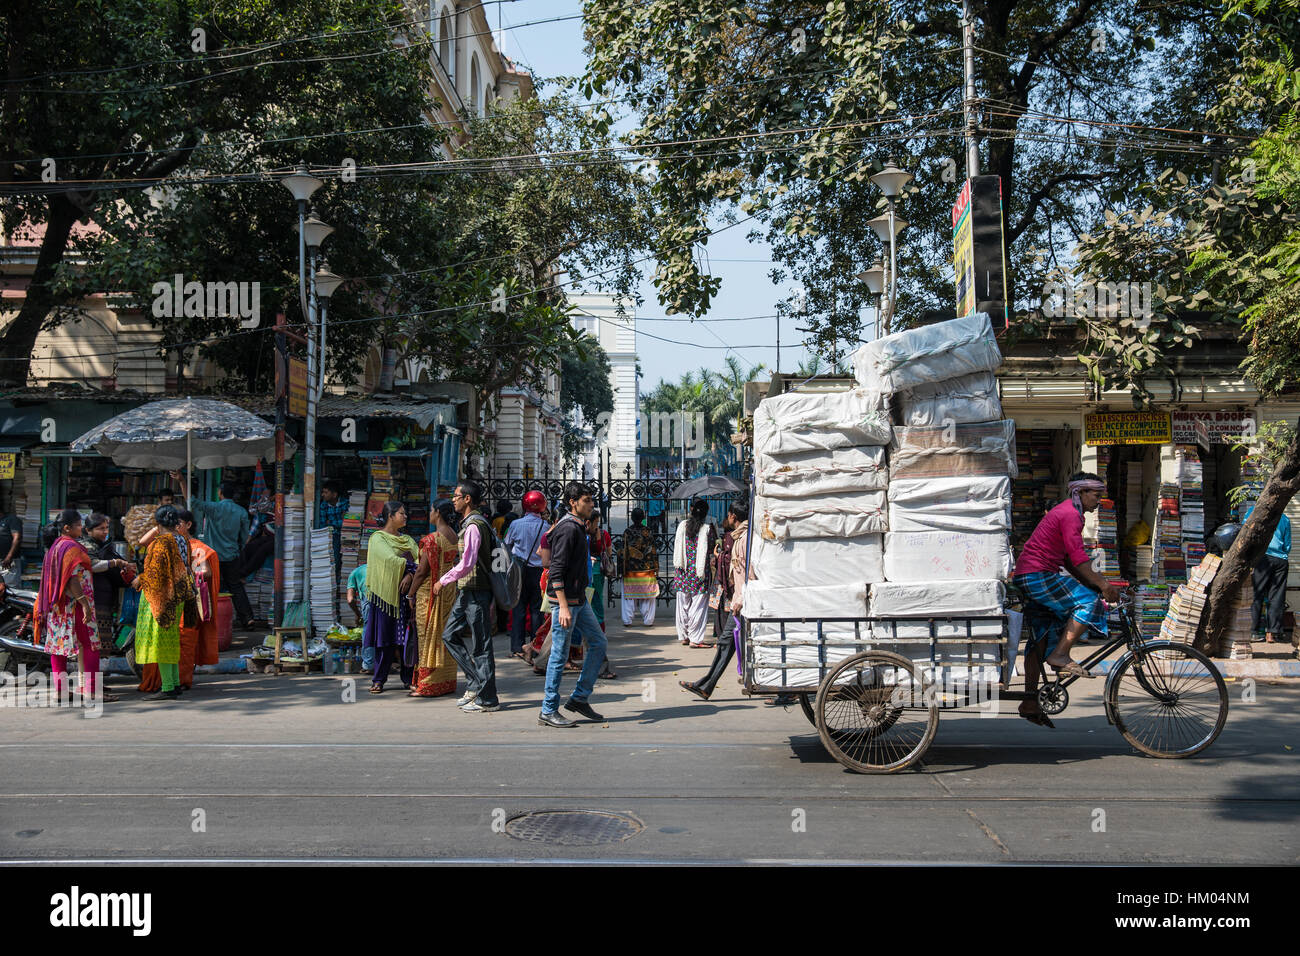 Ropa India Para La Venta Cerca Del Nuevo Mercado, Kolkata, La India Imagen  de archivo - Imagen de tradicional, compras: 67415845